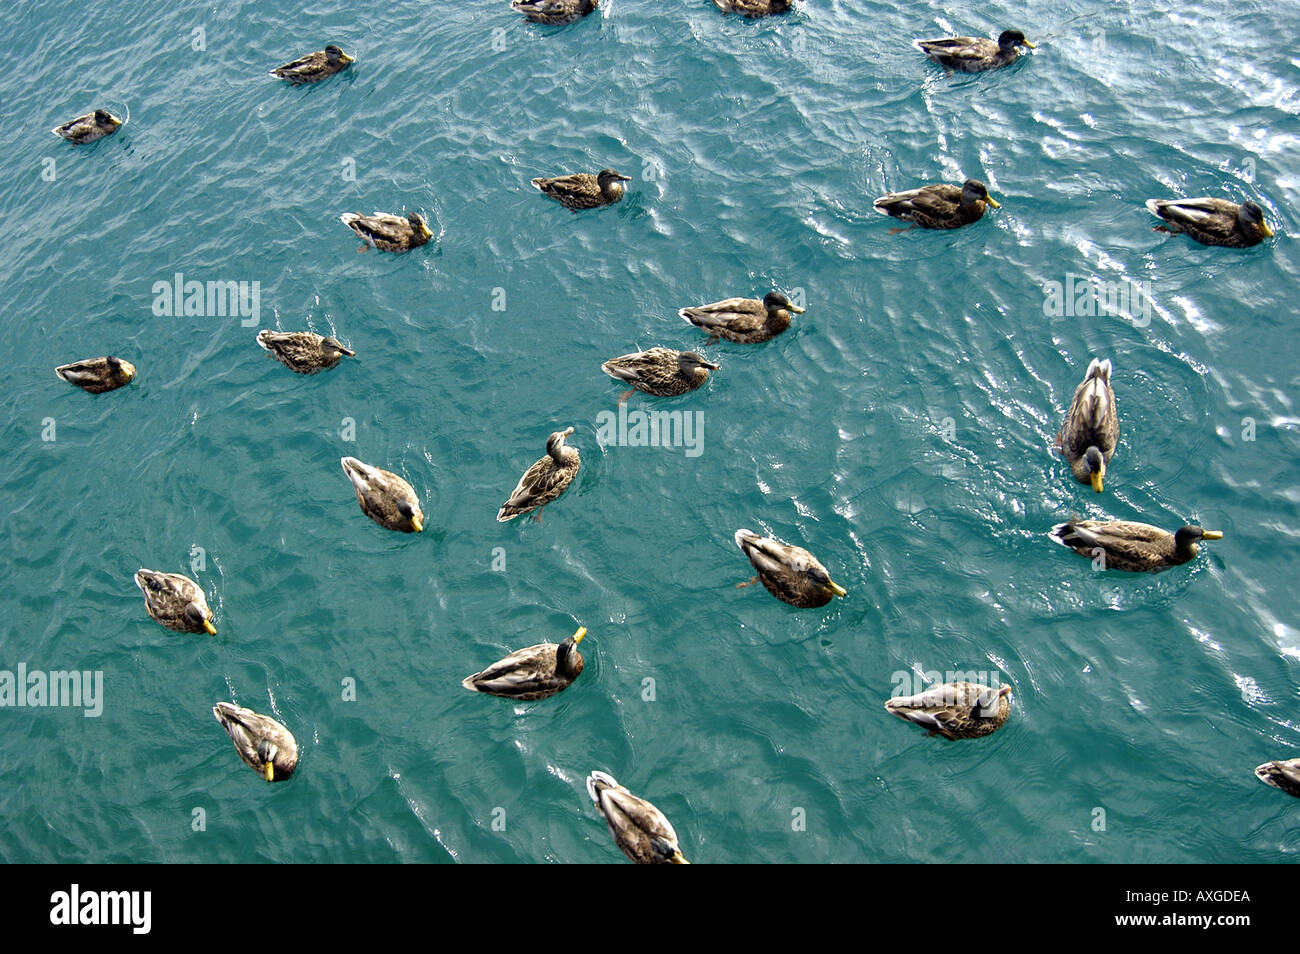 Les Canards colverts nager dans l'eau Banque D'Images